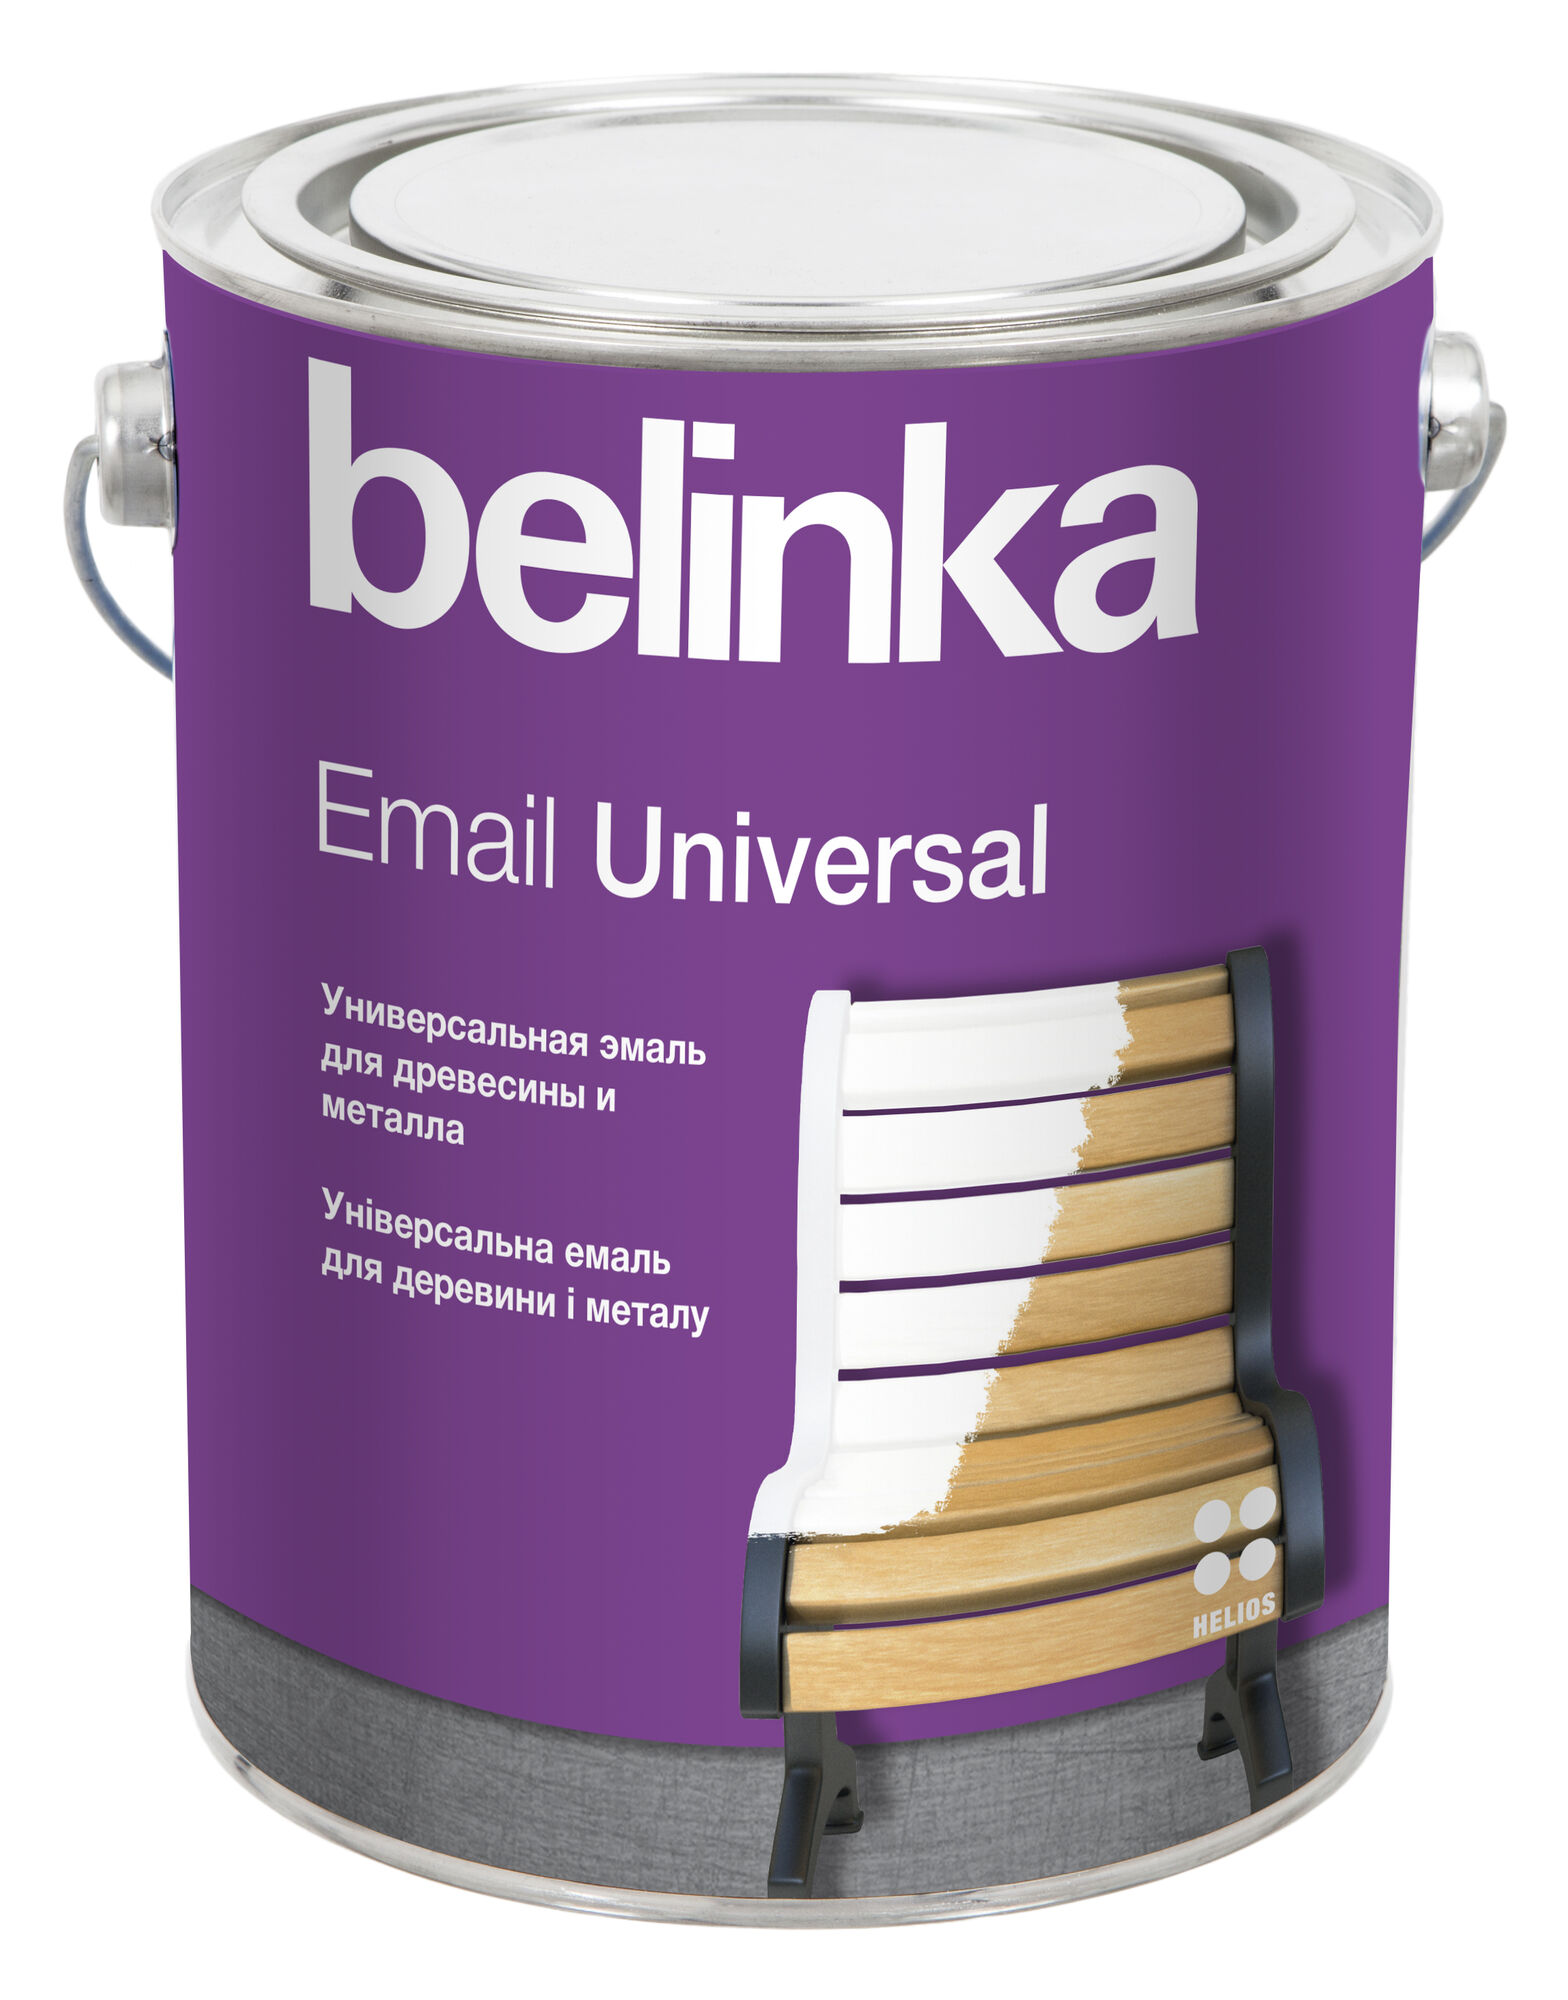 Эмаль универсальная Email Universal Belinka B3 0,9 л Полуматовая